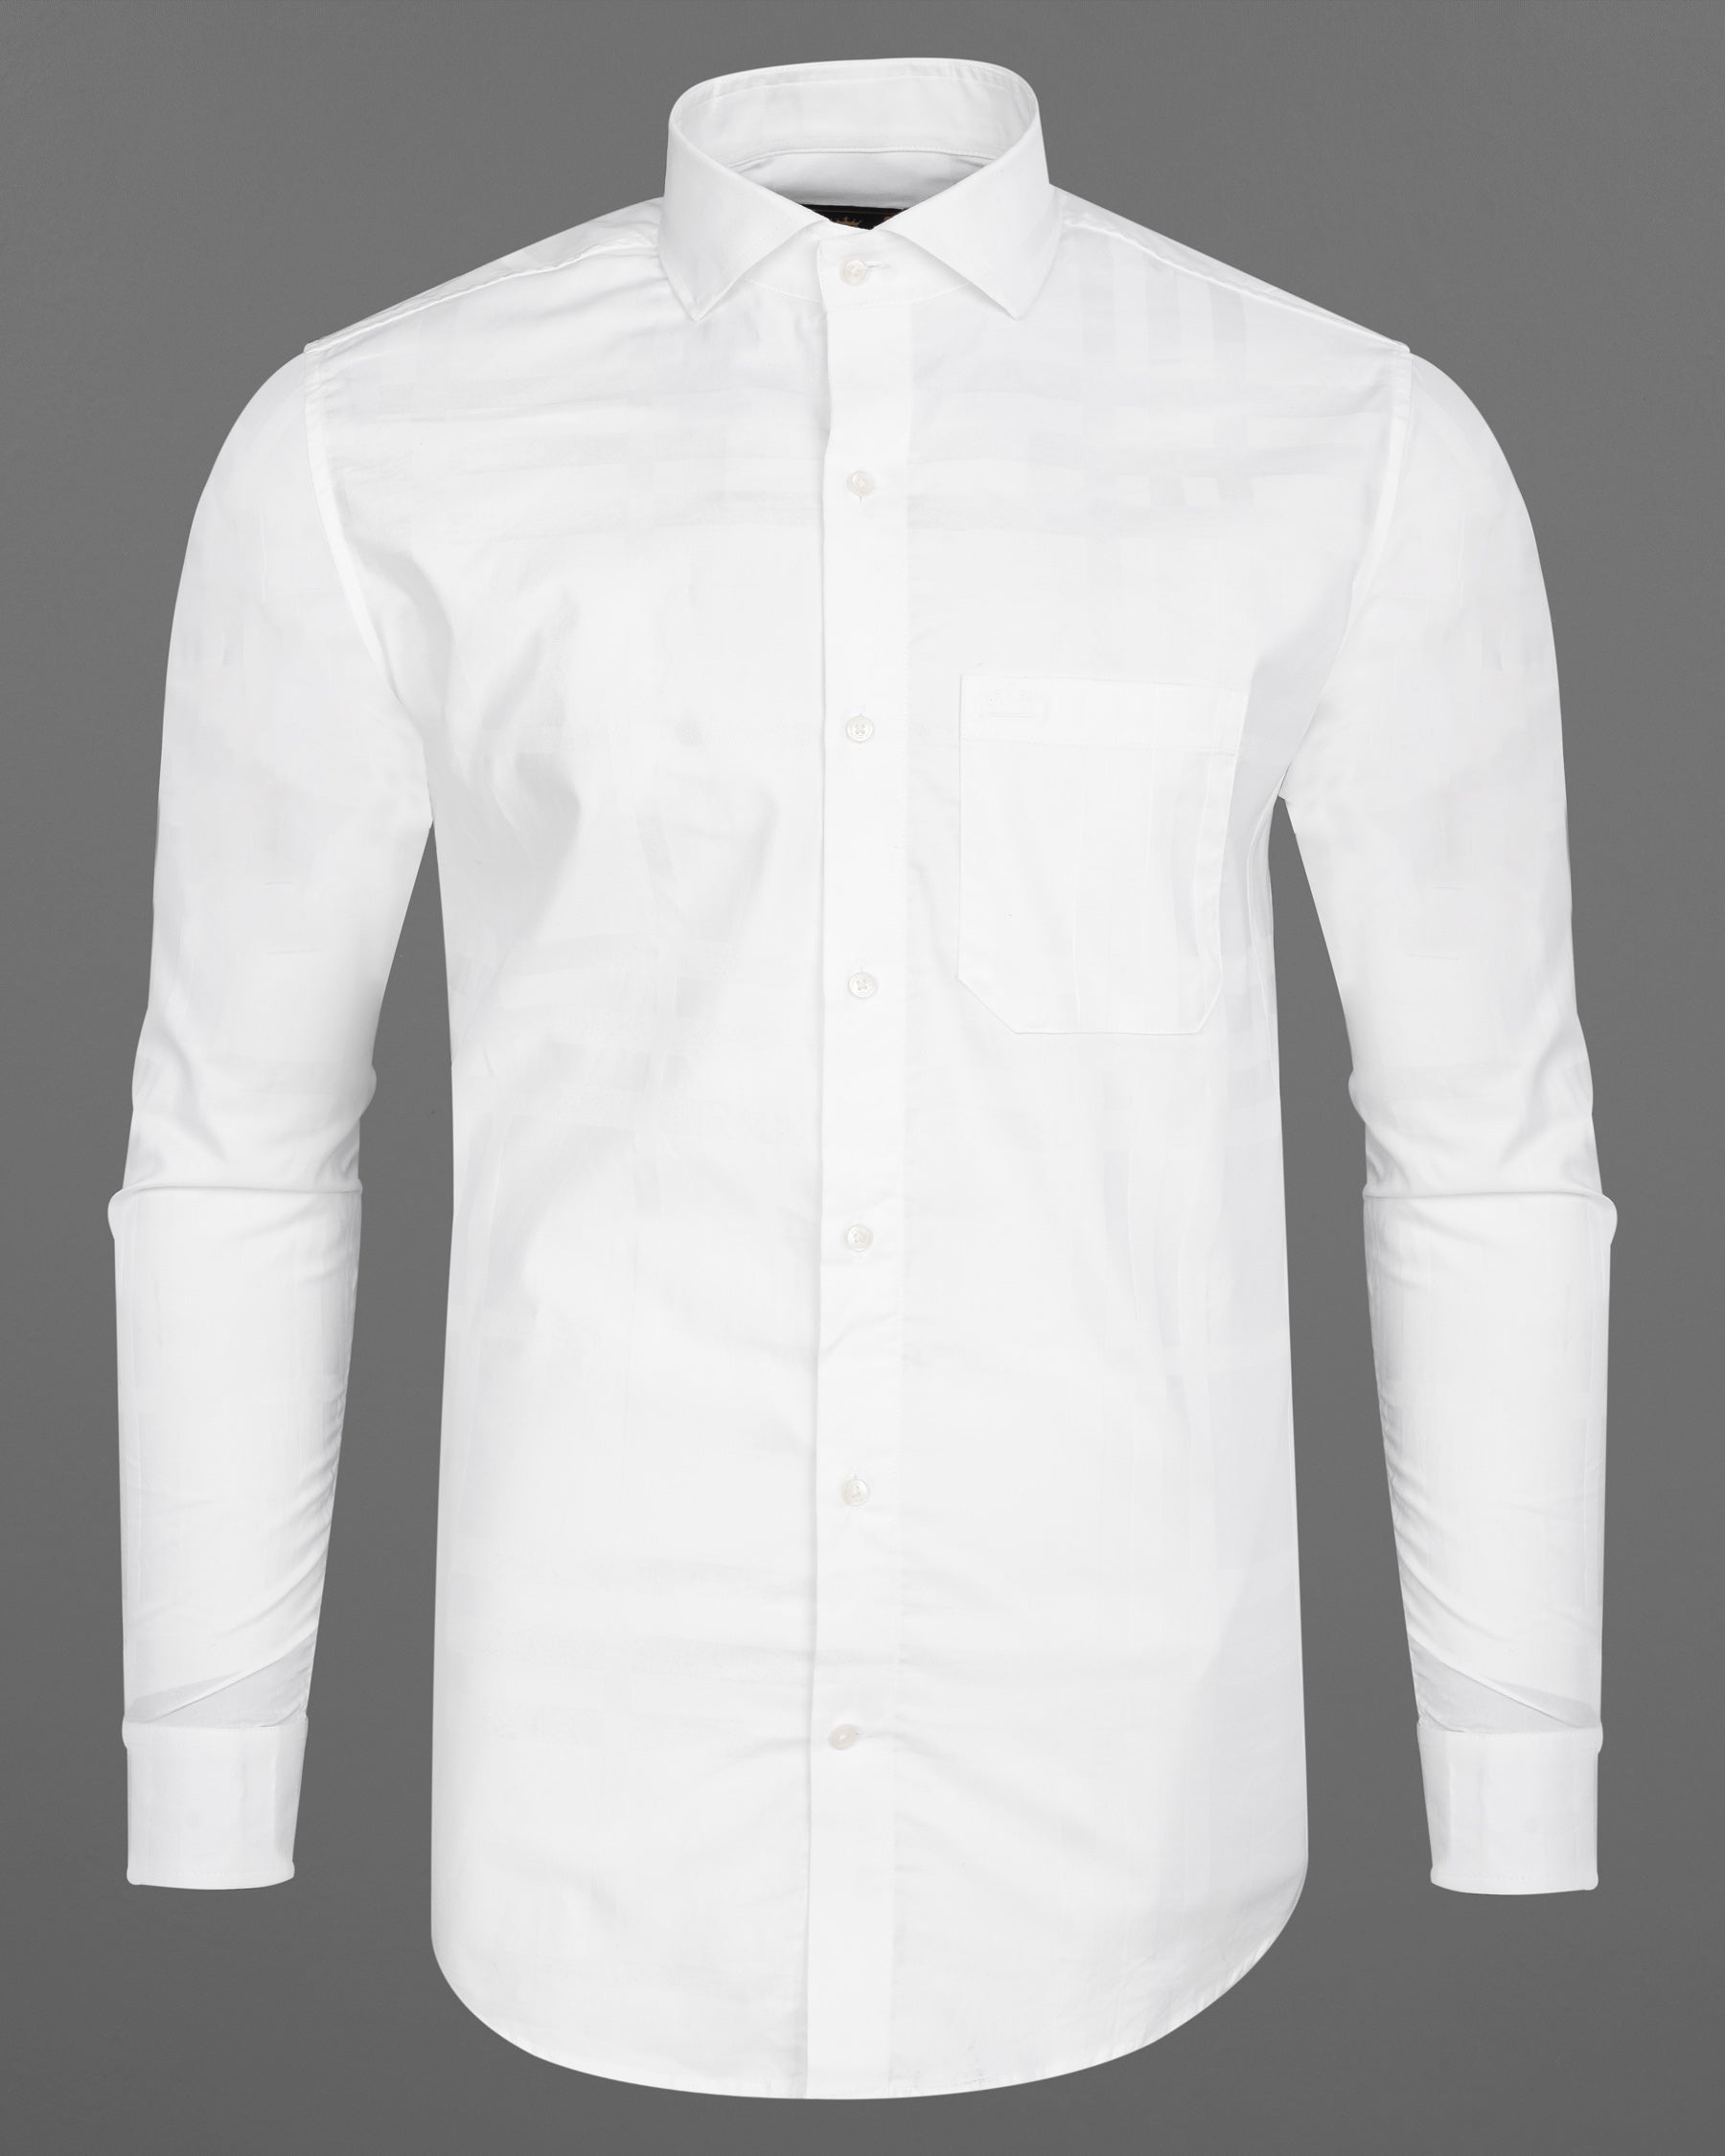 Bright White Super soft Subtle Stripe Textured Premium Giza Cotton Shirt 7836-CA-38, 7836-CA-H-38, 7836-CA-39,7836-CA-H-39, 7836-CA-40, 7836-CA-H-40, 7836-CA-42, 7836-CA-H-42, 7836-CA-44, 7836-CA-H-44, 7836-CA-46, 7836-CA-H-46, 7836-CA-48, 7836-CA-H-48, 7836-CA-50, 7836-CA-H-50, 7836-CA-52, 7836-CA-H-52